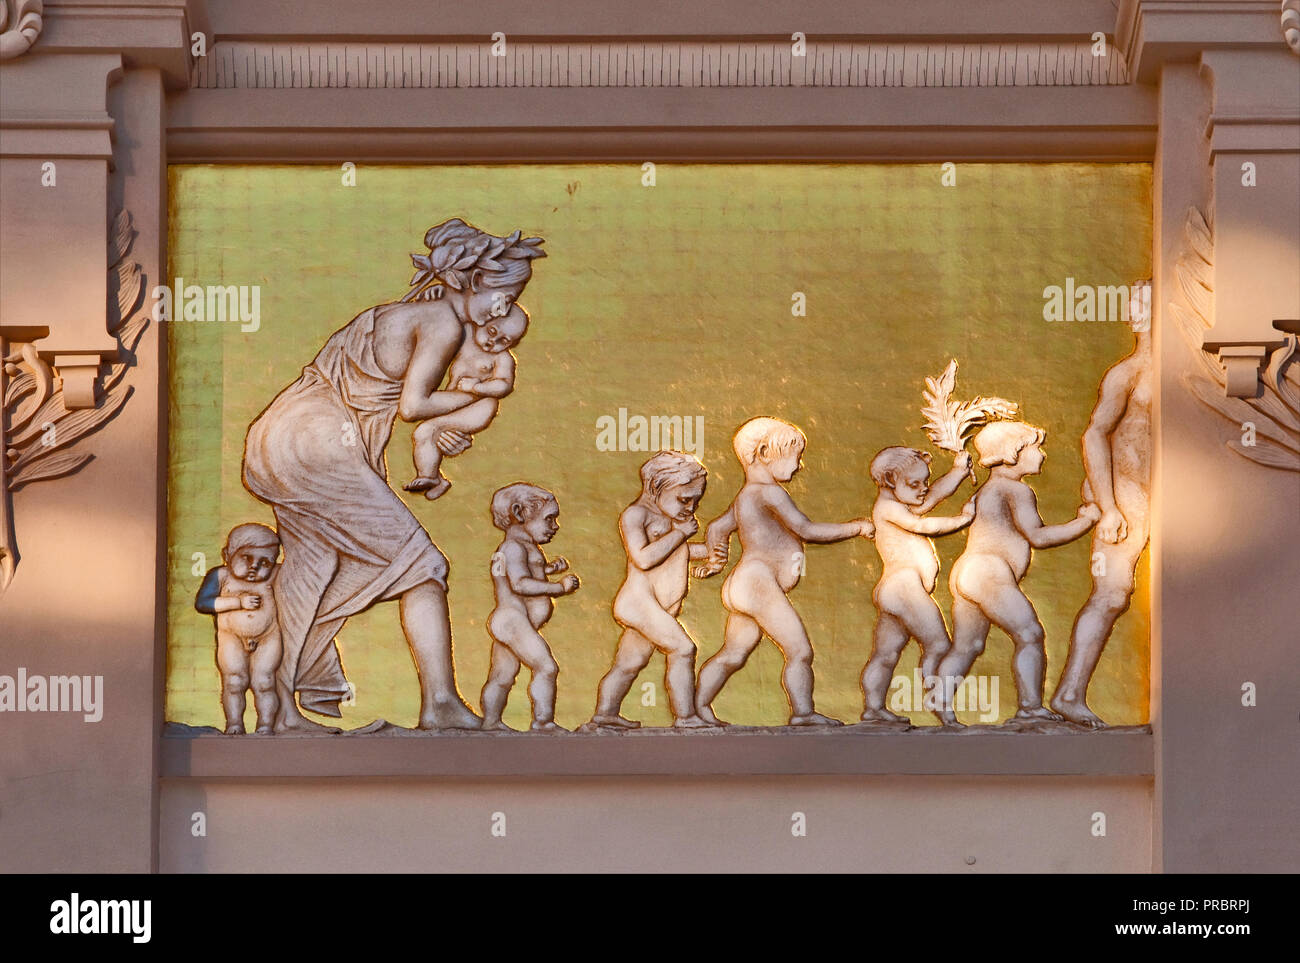 Panel de bajo relieve de estilo Art Nouveau, diseñado por Jacek Malczewski, en el friso de Palac Sztuki o Palacio de Bellas Artes de Cracovia, Polonia Foto de stock